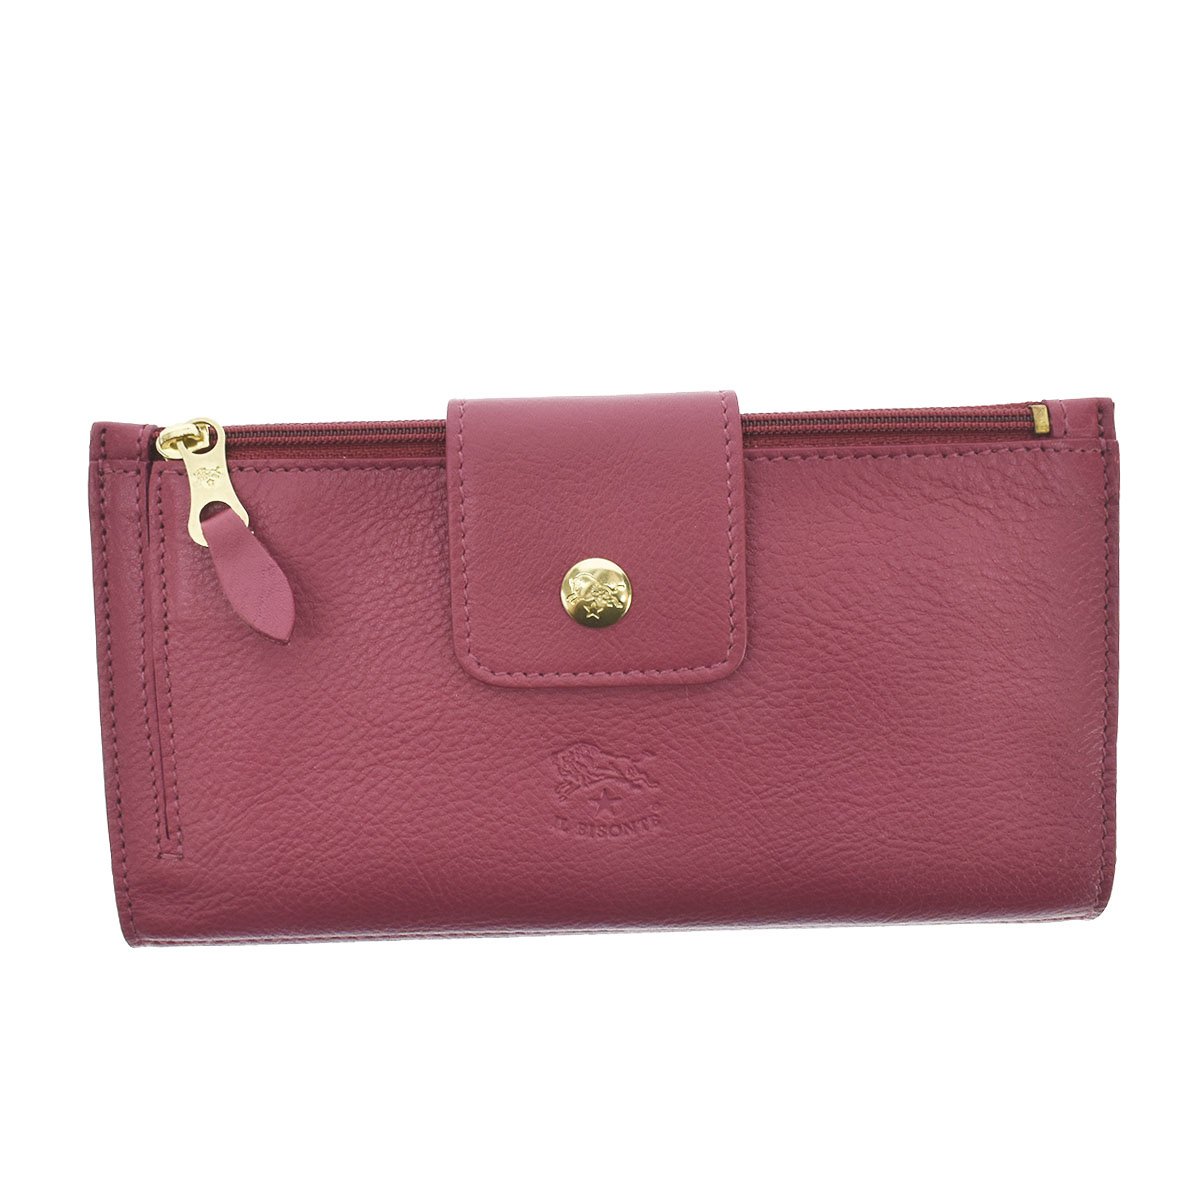 柔らかな質感の 財布 イルビゾンテ 新品 スマック ピンク コインケース